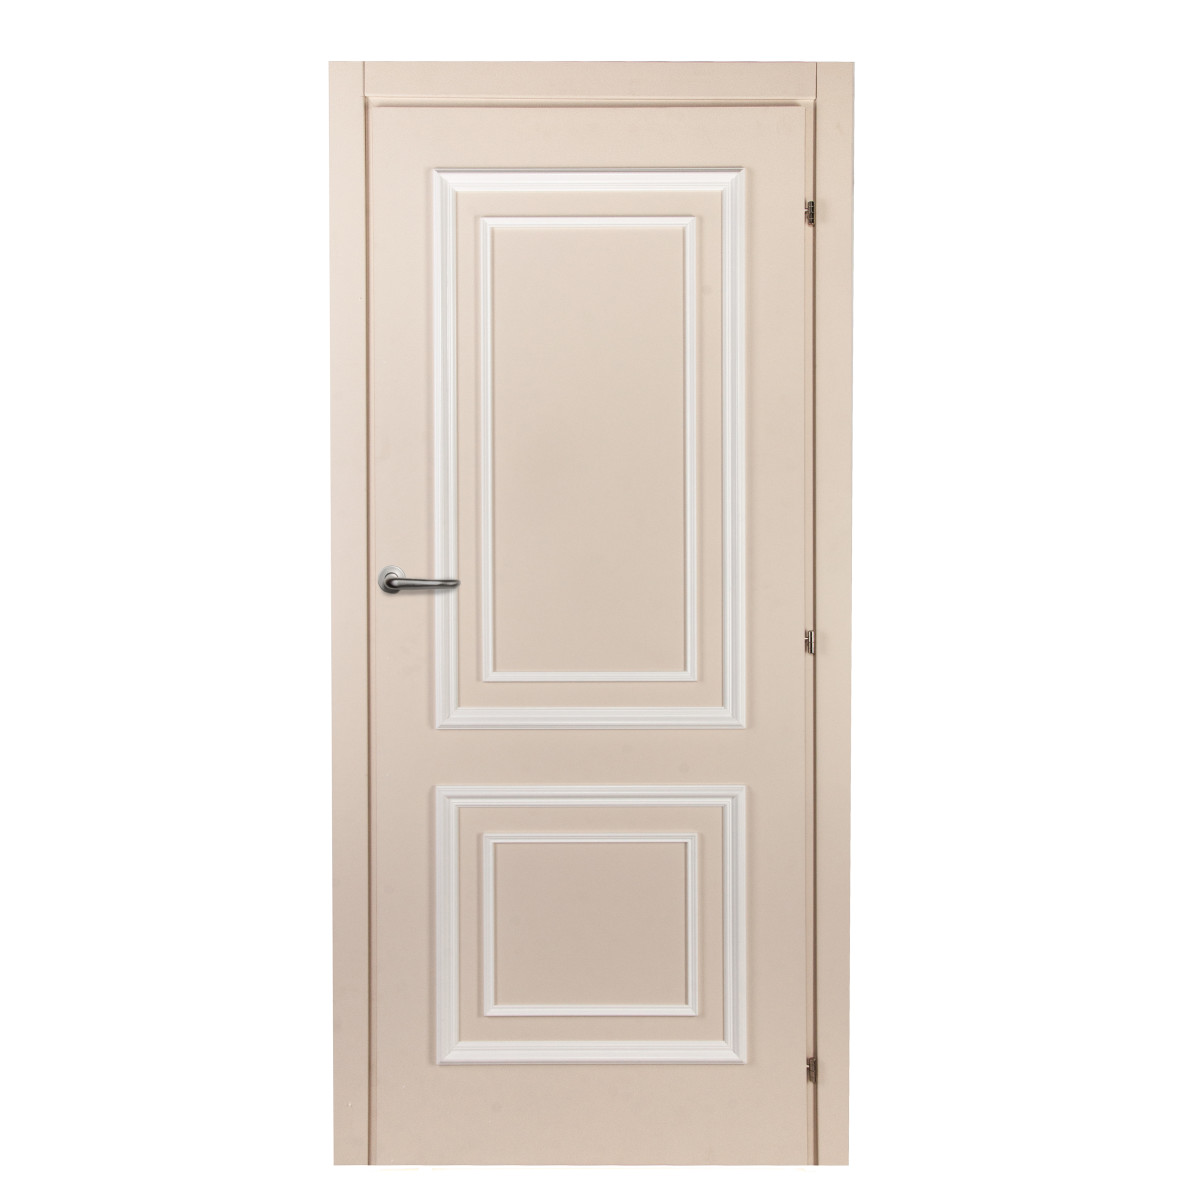 Дверь межкомнатная Треви 70х200 см, цвет магнолия, с фурнитурой